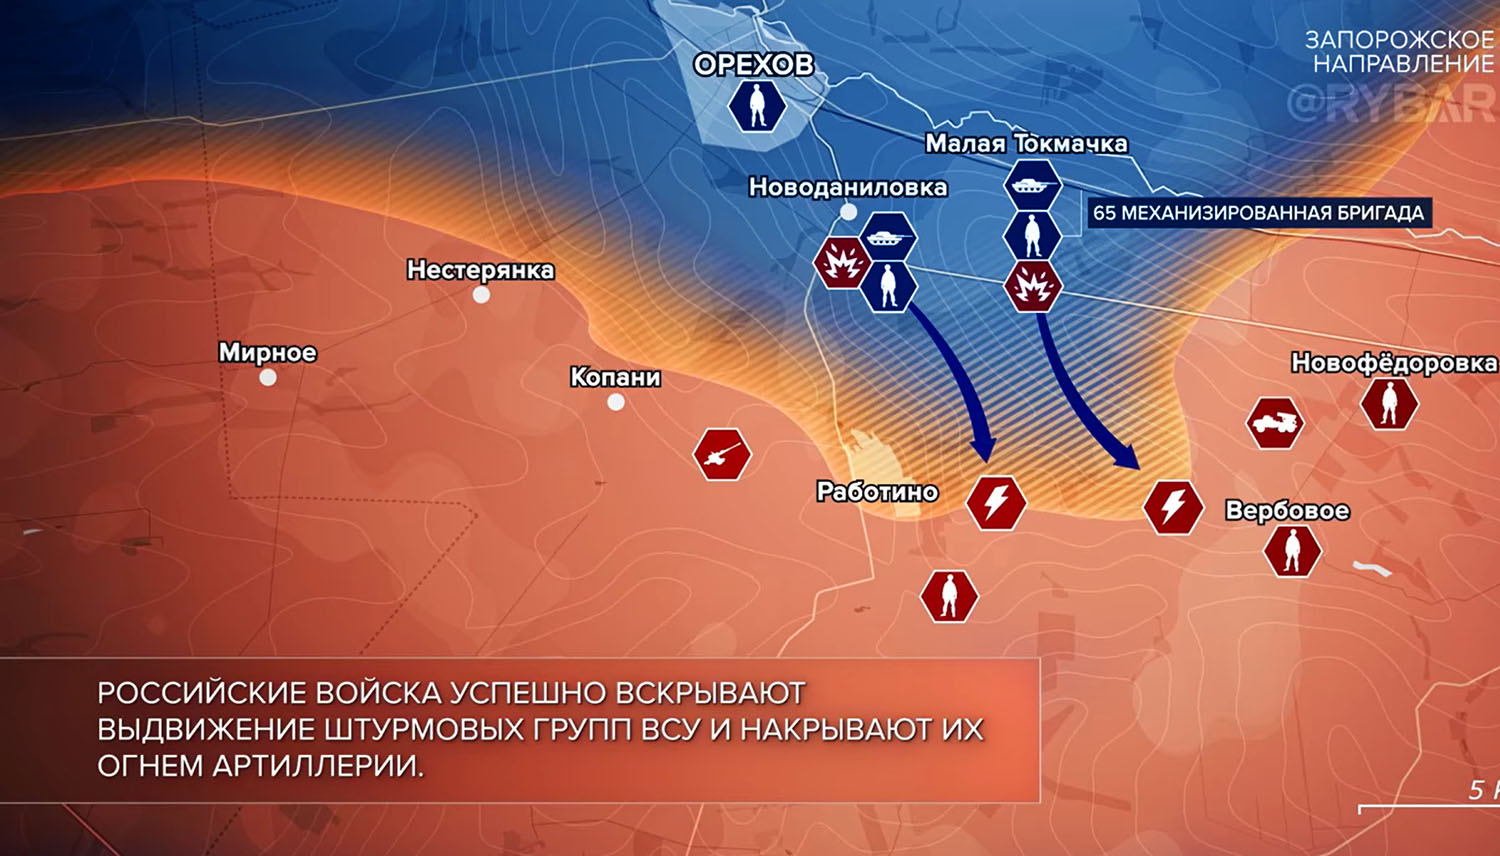 Карта боевых действий на Украине, Запорожское направление, на 04.10.23 г. Карта СВО от «Рыбарь».